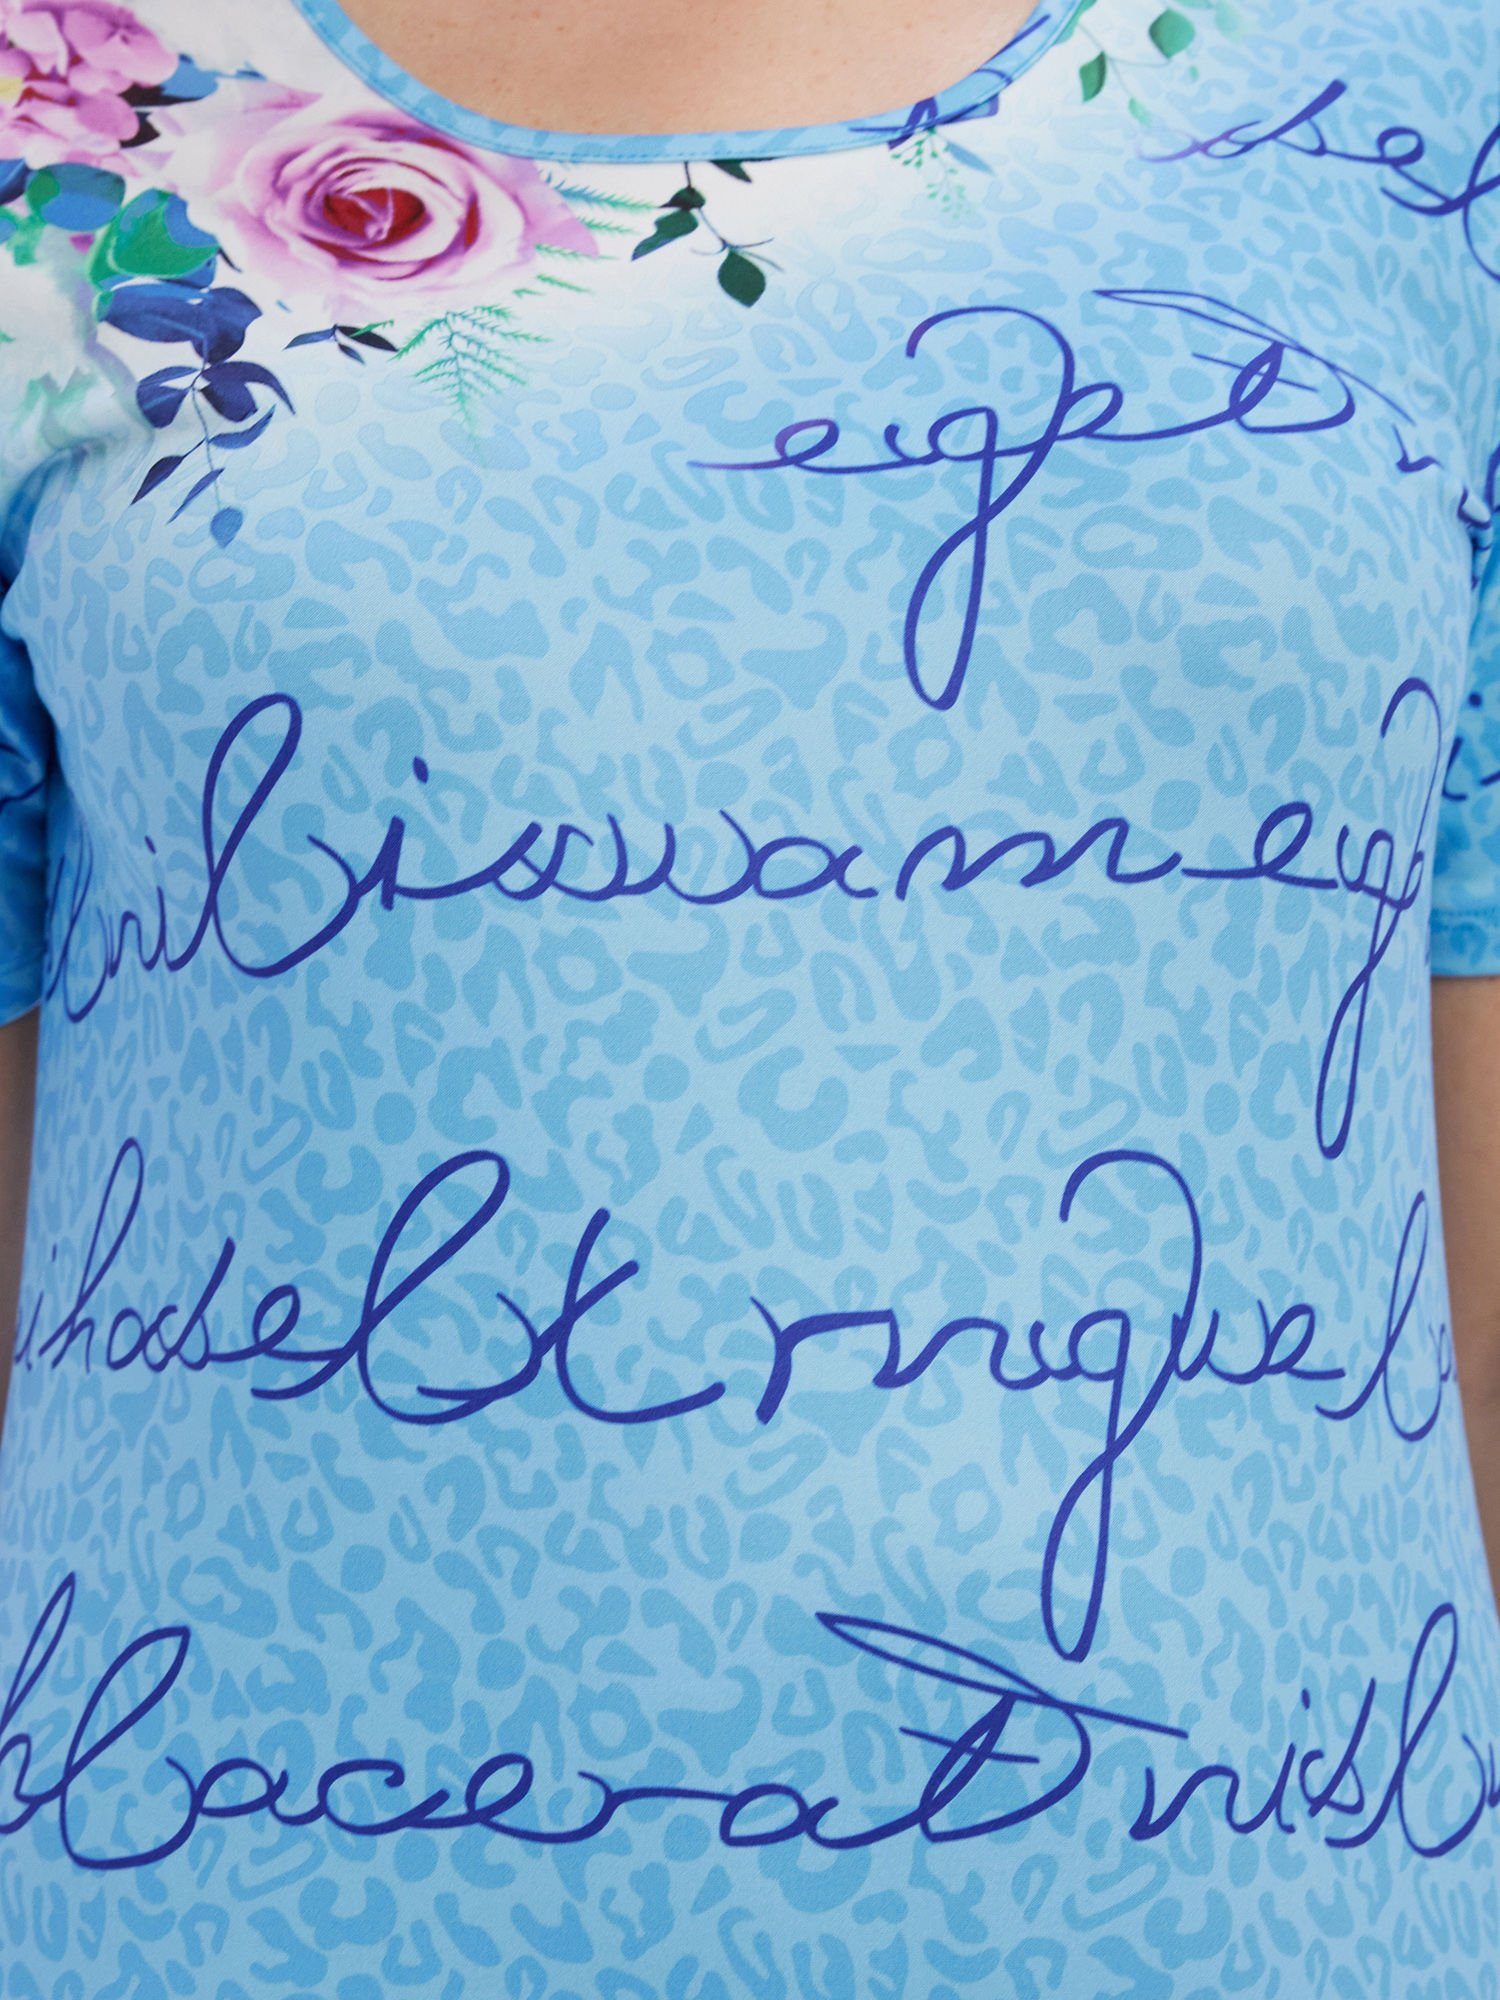 Schriftzügen mit Bigshirt elastisch Beaux Nachthemd Blumenmuster Belli und